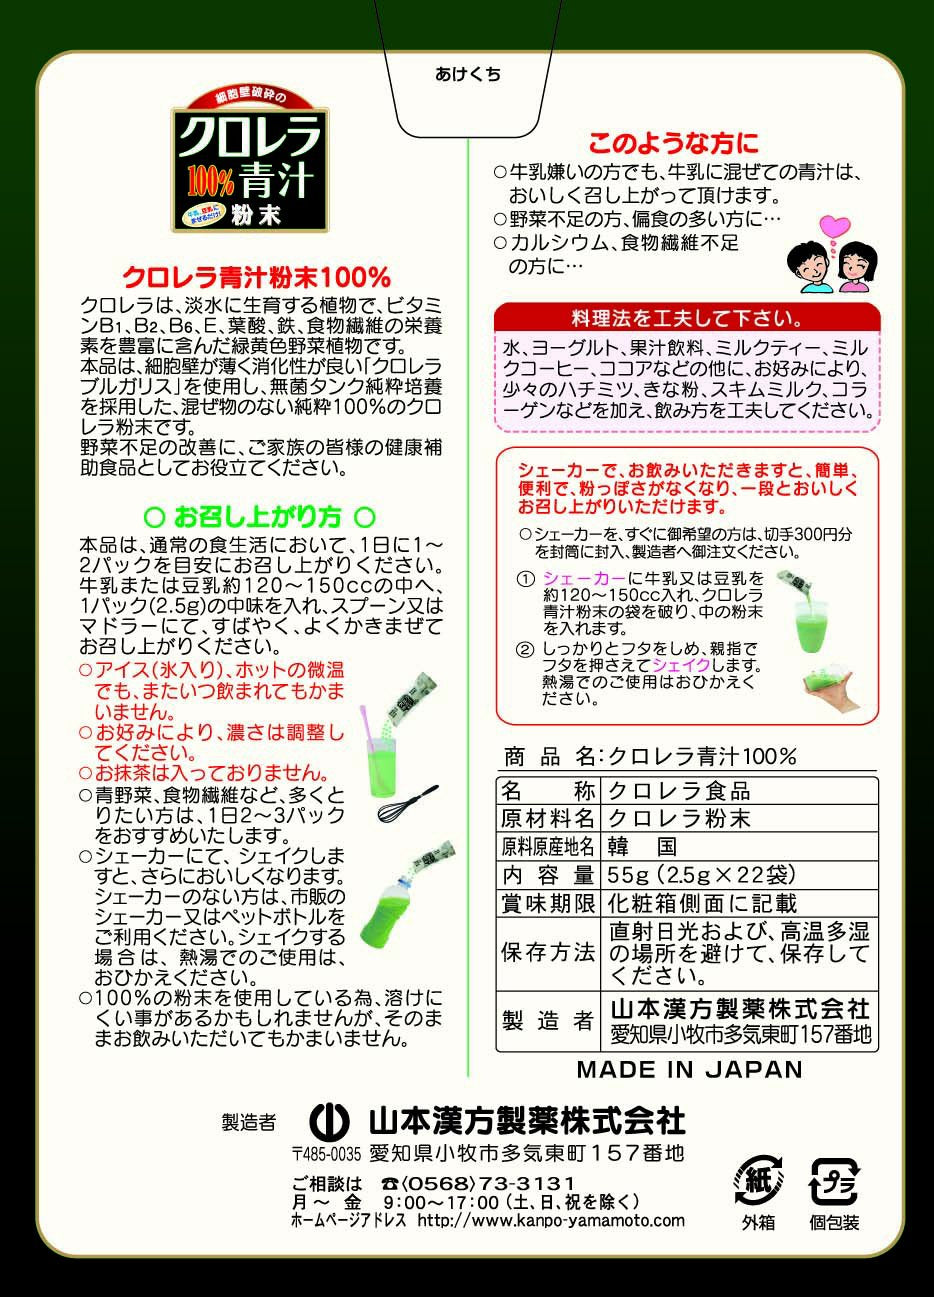 Yamamoto Chinese Medicine Chlorella Green Juice 100% 2.5gx22 packets